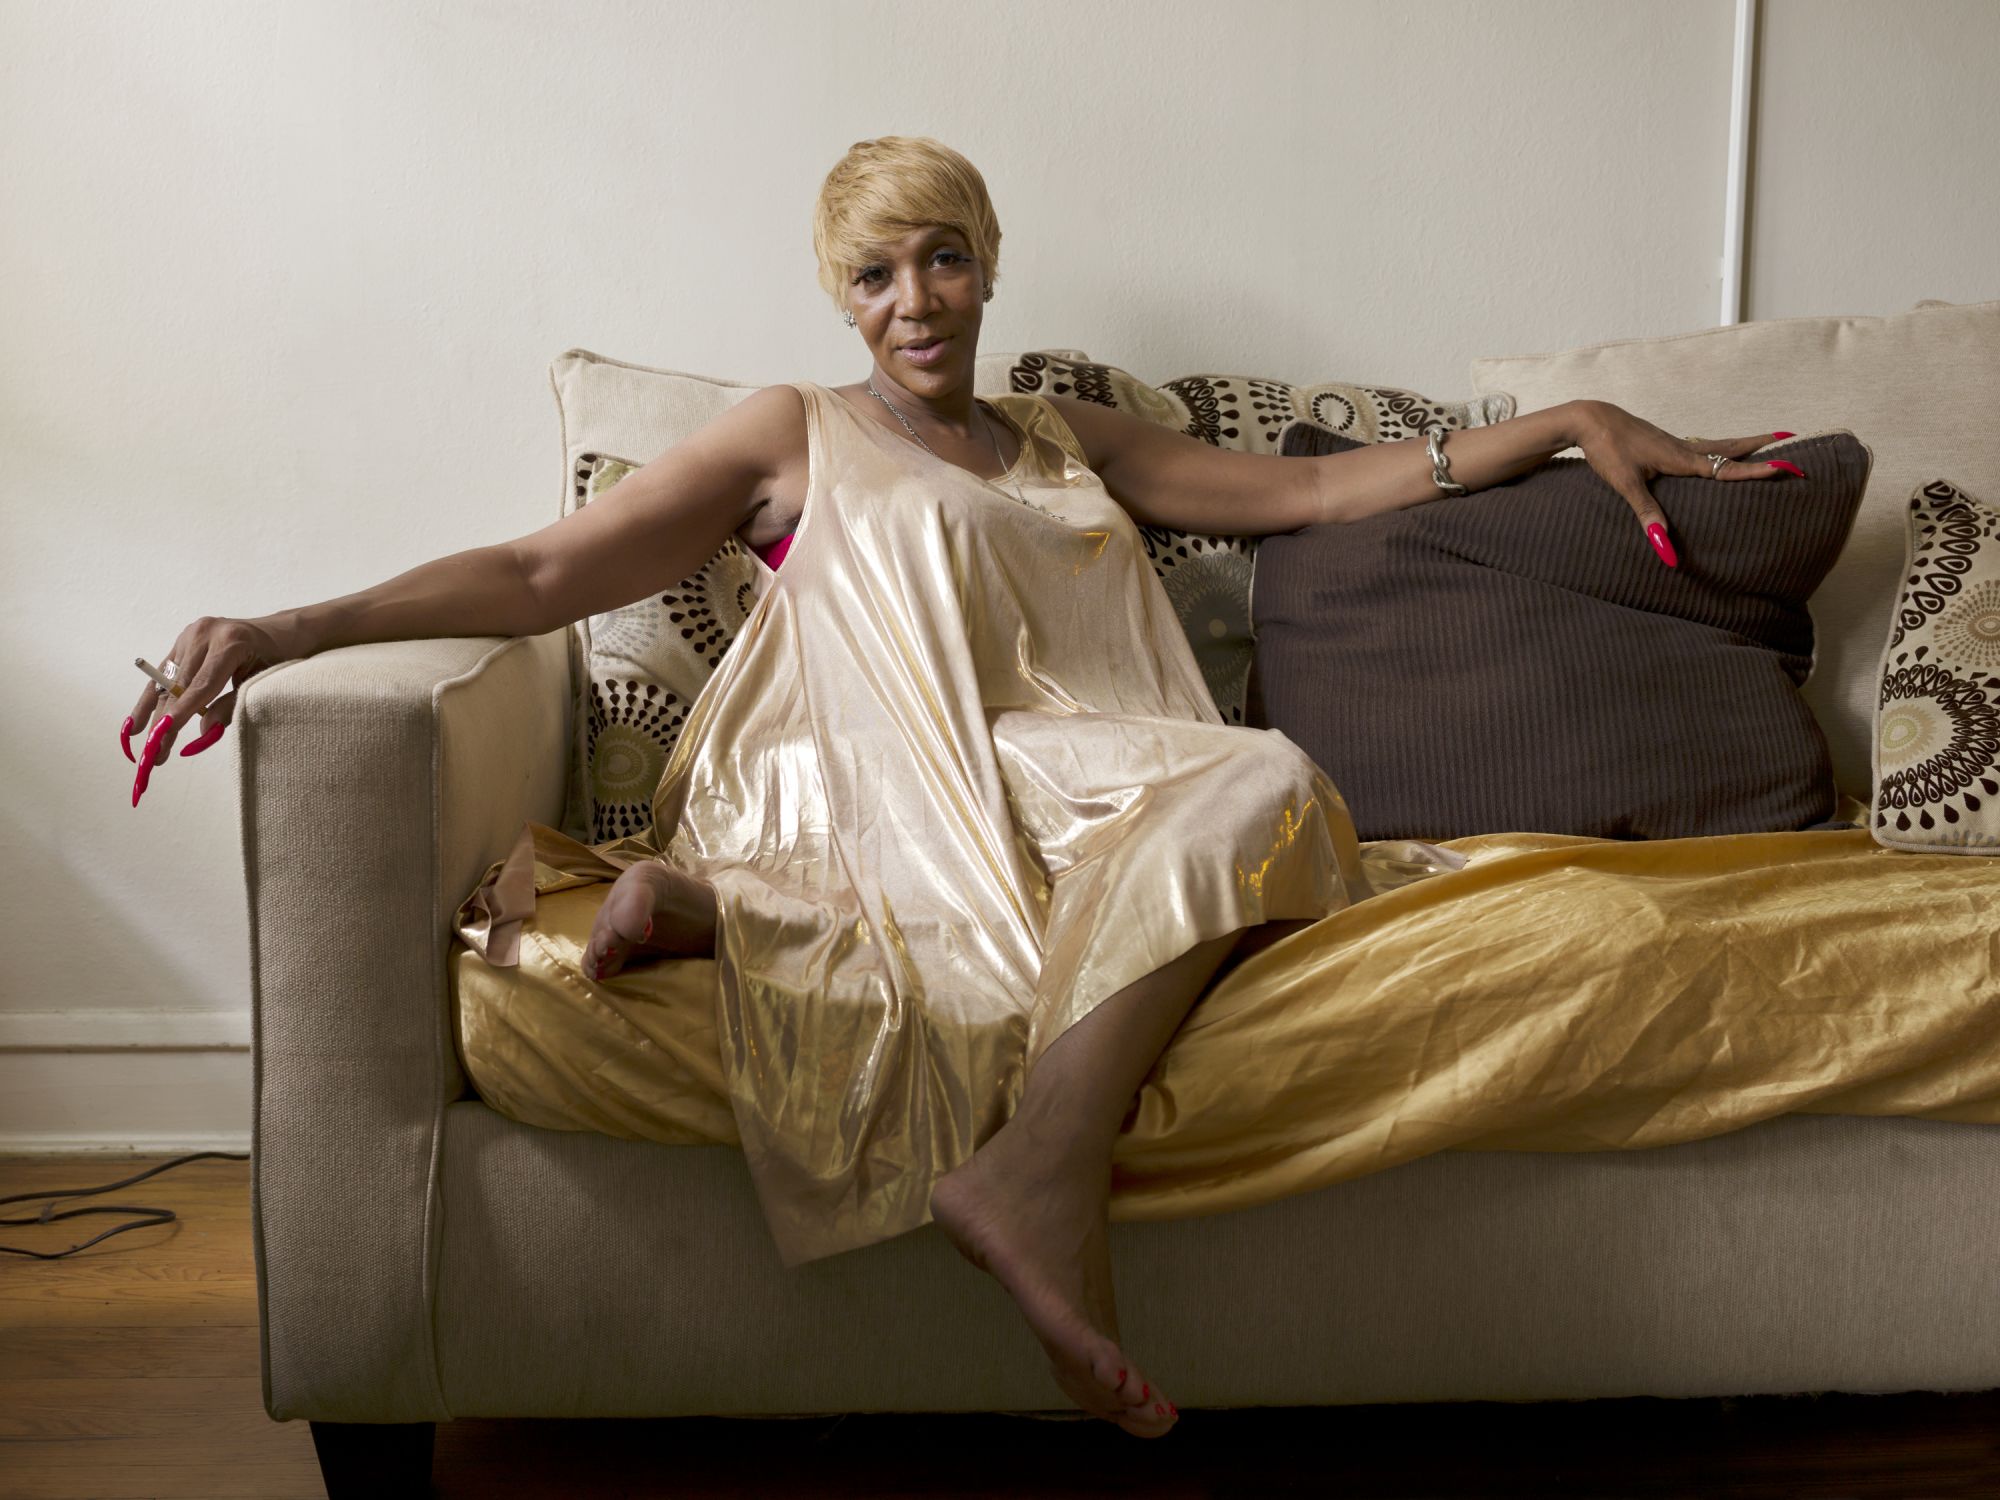 Portraits depict 'struggles and joys' of older transgender people